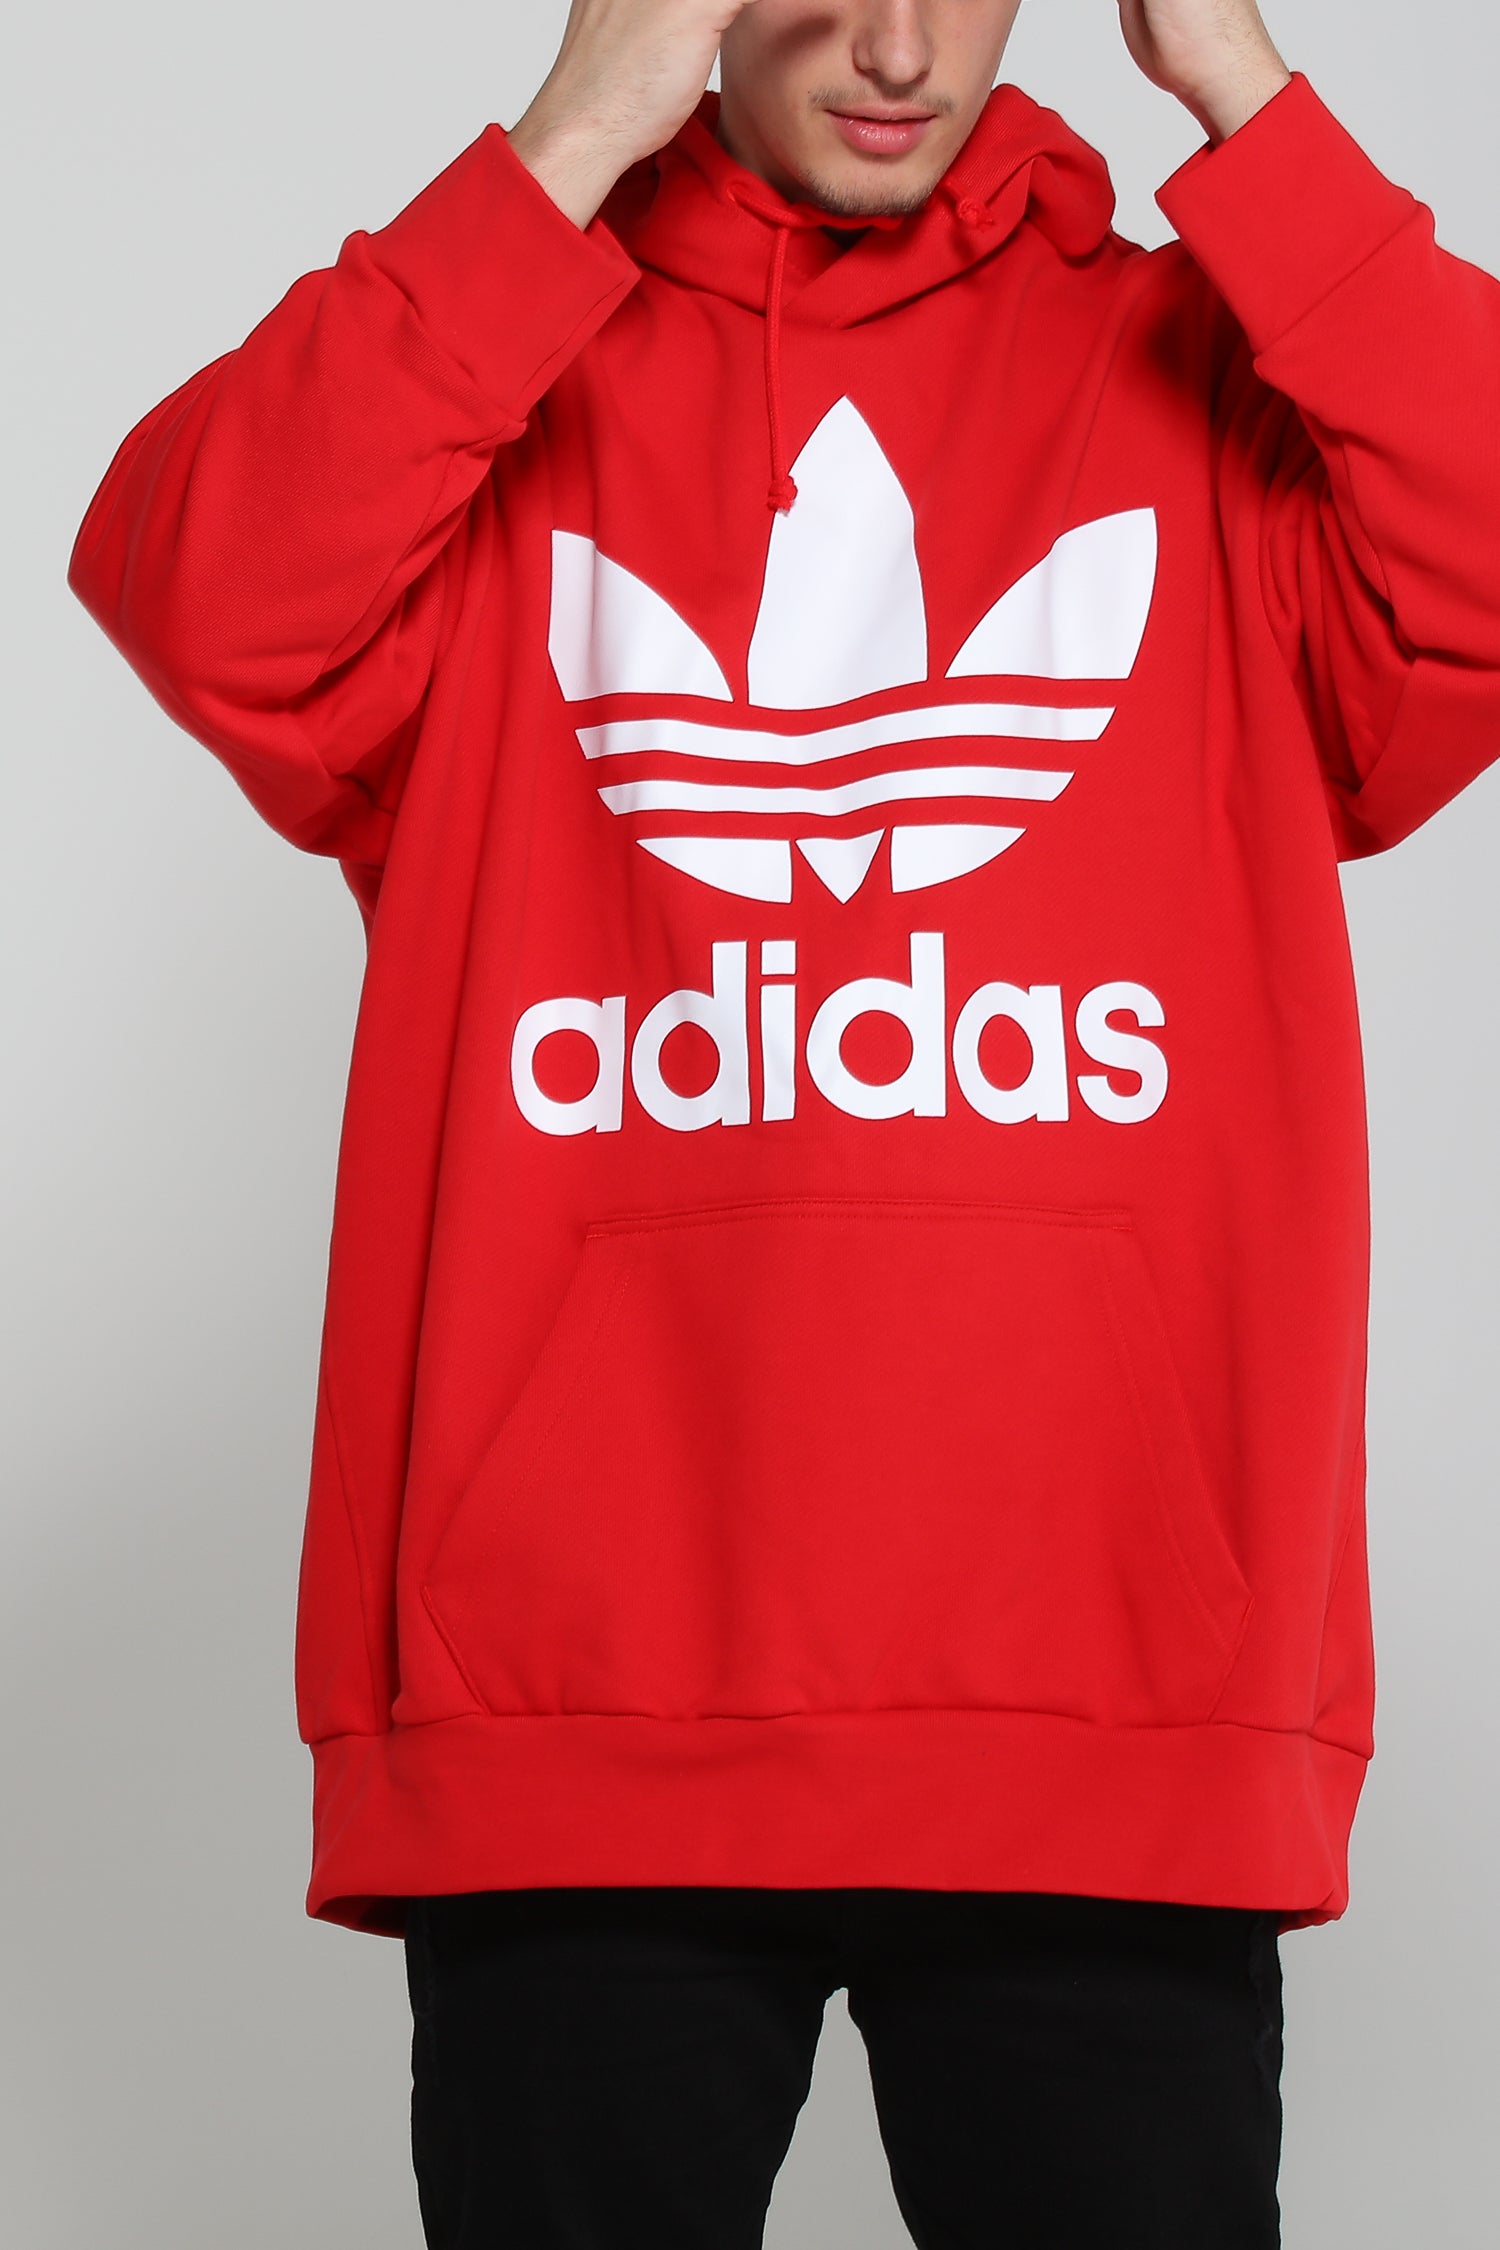 adidas trefoil hoodie red